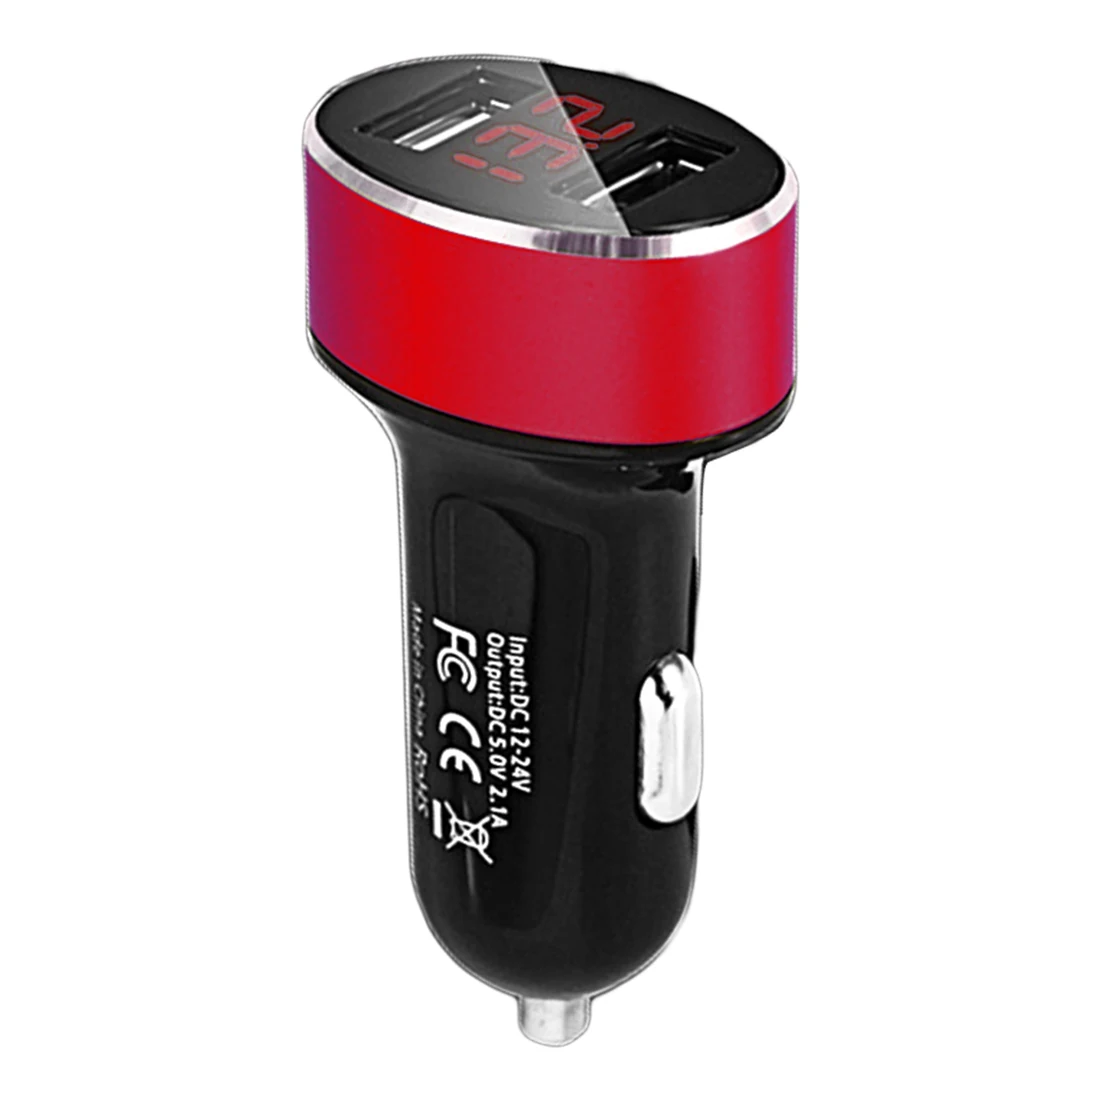 Dewtreetali Dual Usb Автомобильное зарядное устройство 3.1A автомобильный прикуриватель Универсальное USB Автомобильное зарядное устройство с дисплеем напряжения автомобиля для iphone6 7 Sum - Название цвета: Красный